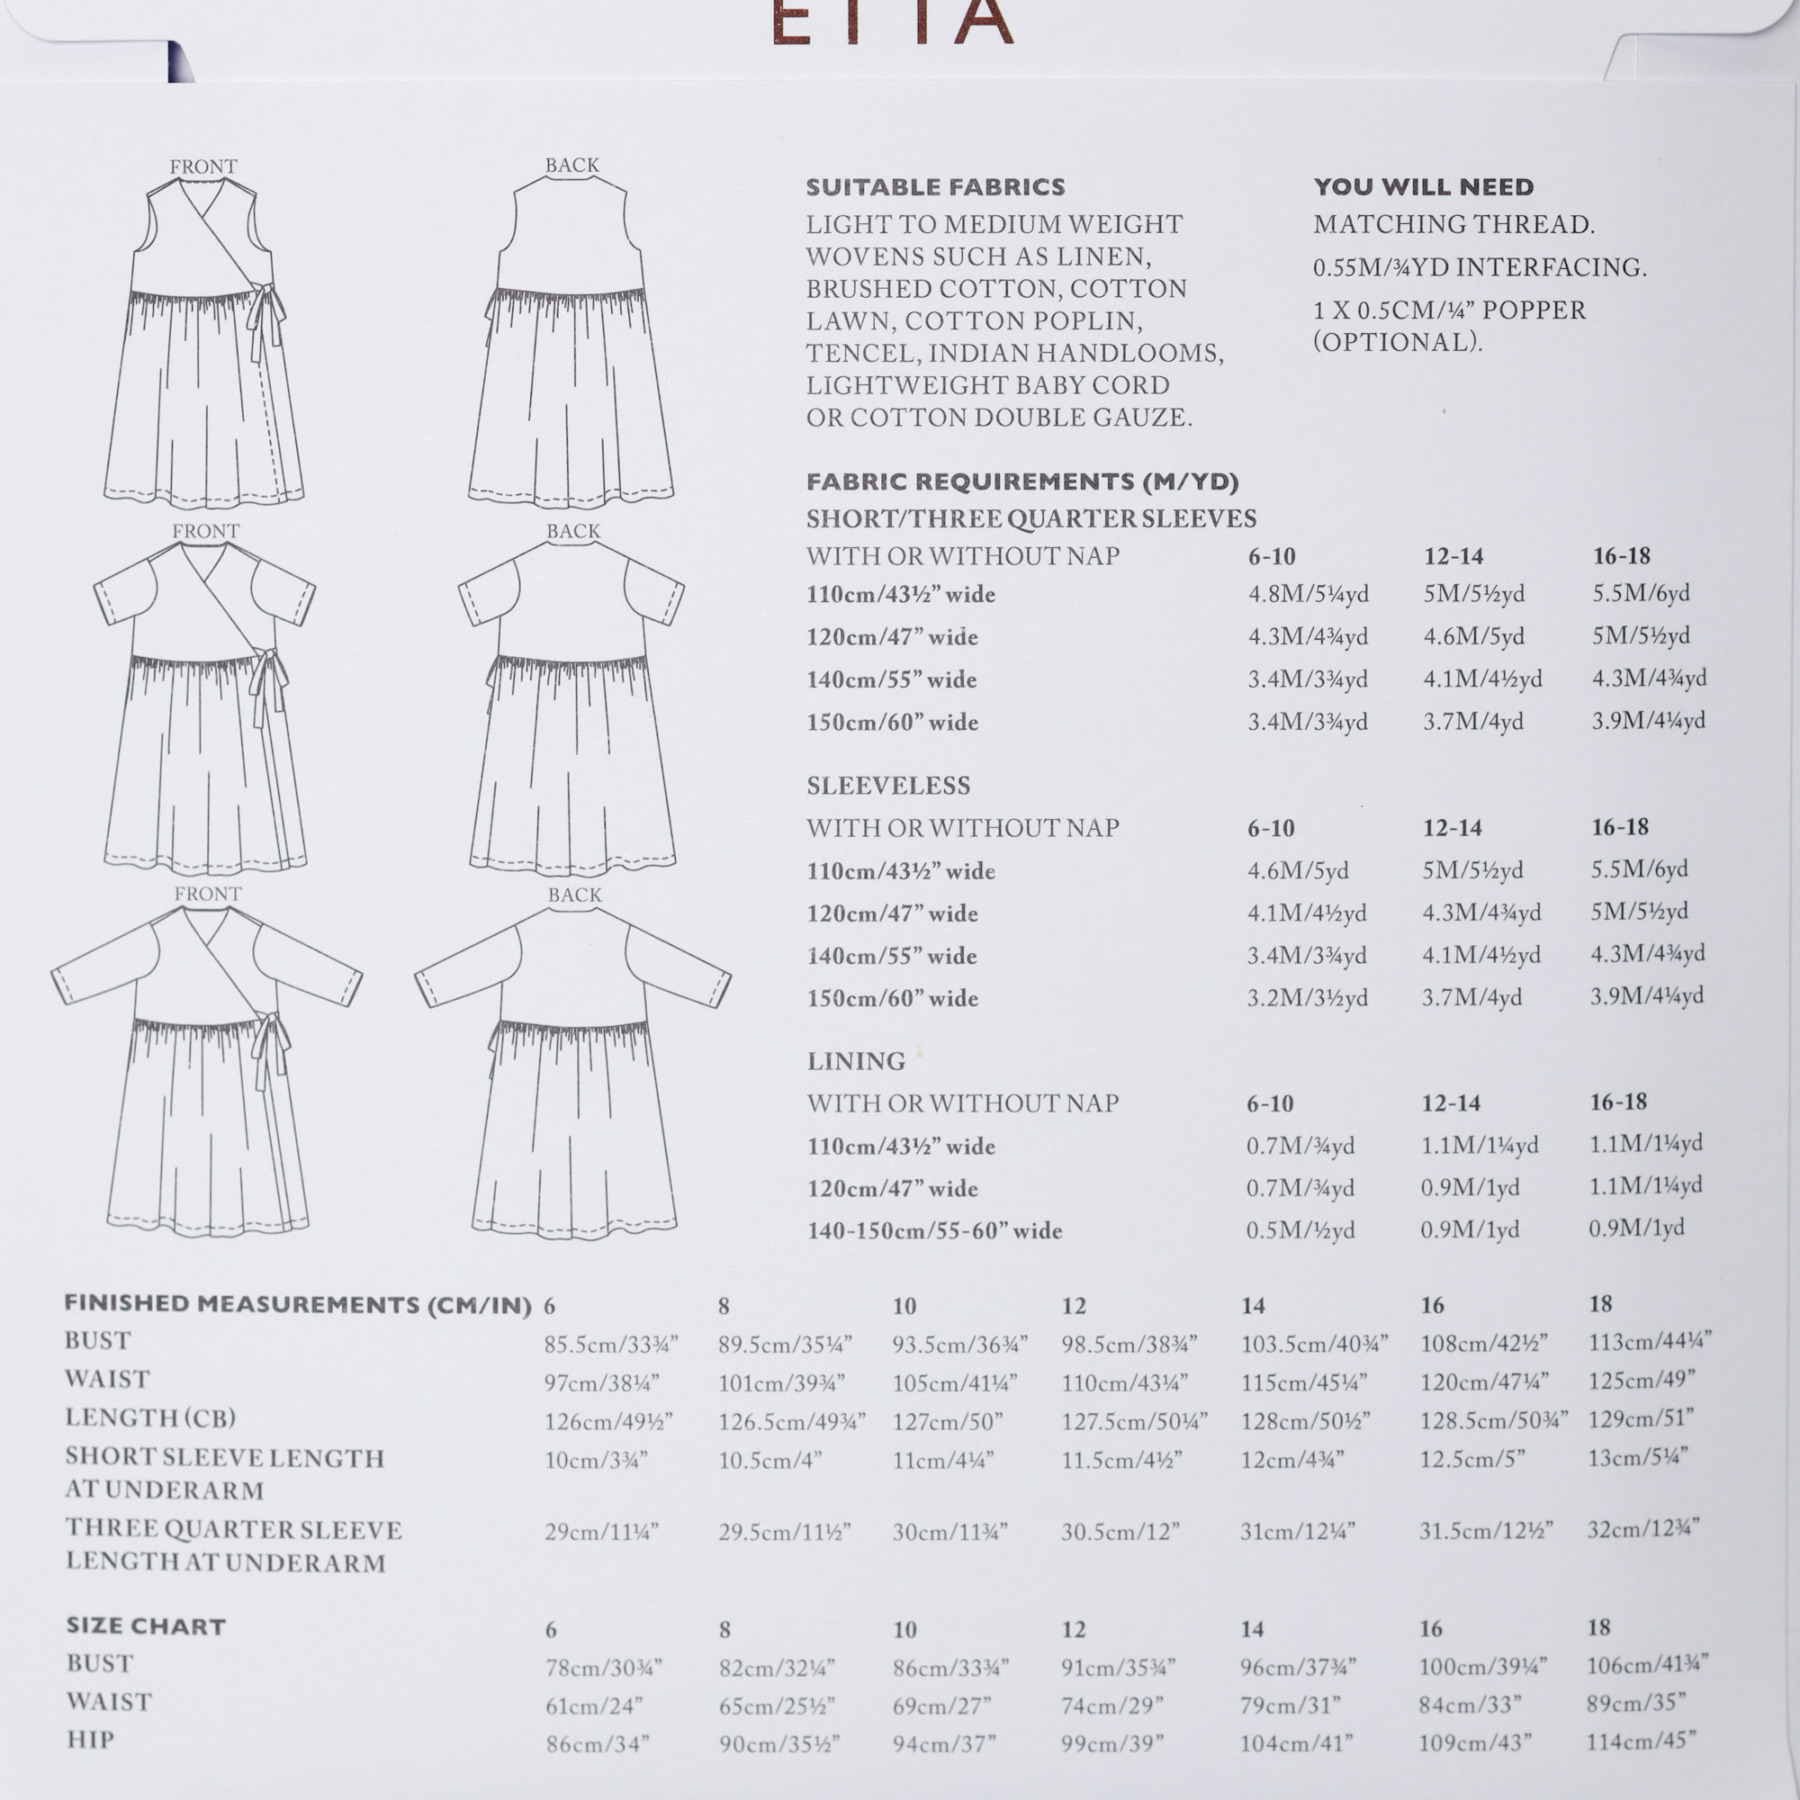 Etta (UK Size 6-18)